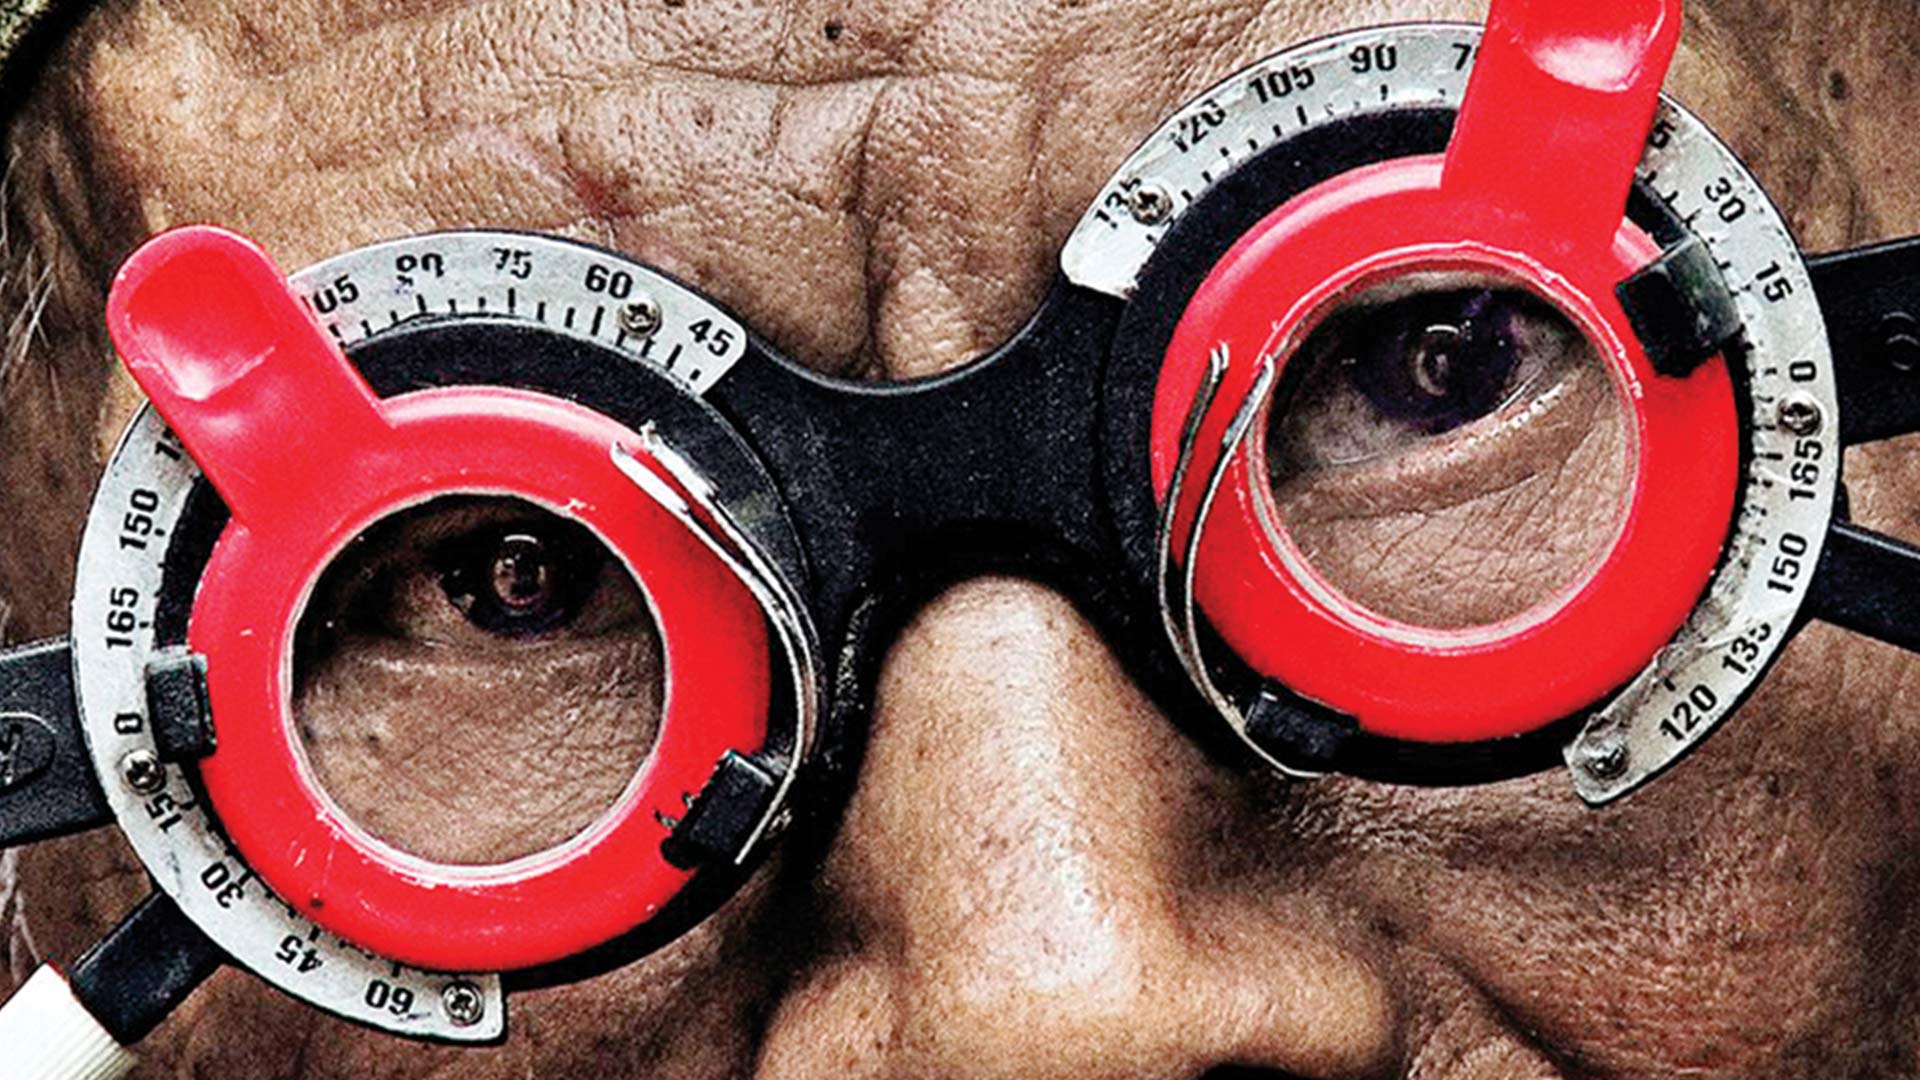 مرد اندونزیایی با عینک پزشکی در مستند چهره سکوت